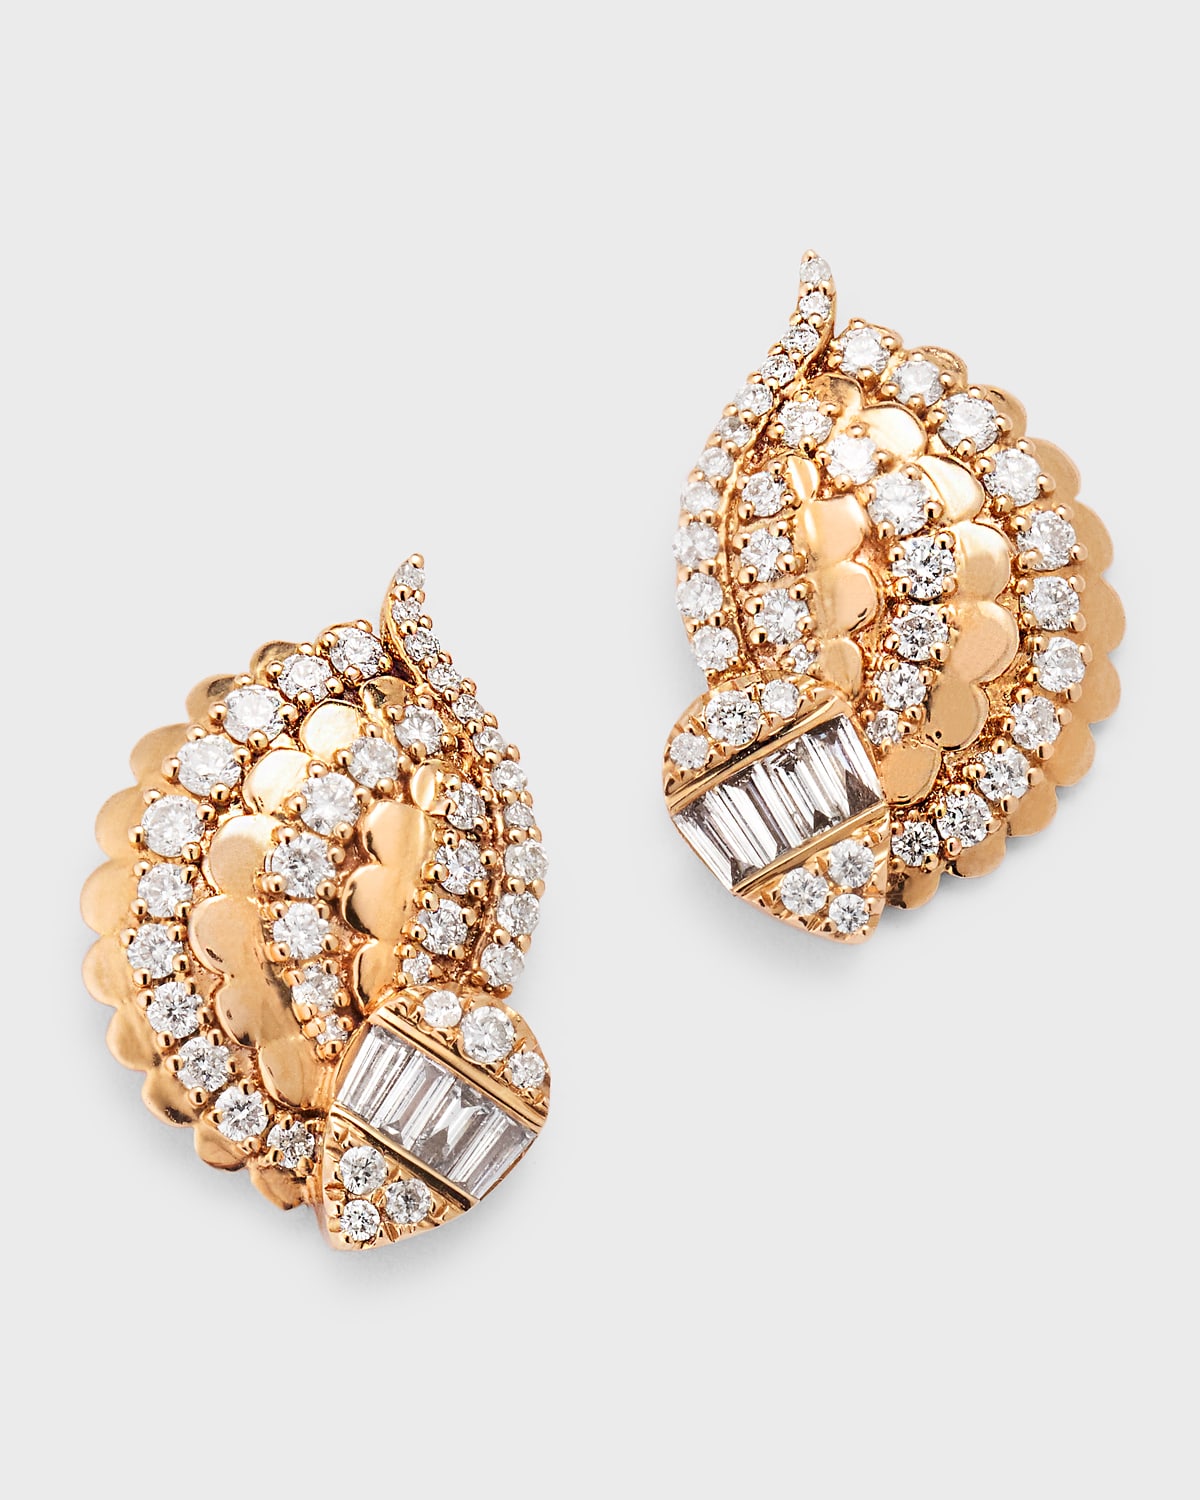 18k Rose Gold Diamond Stud Earrings